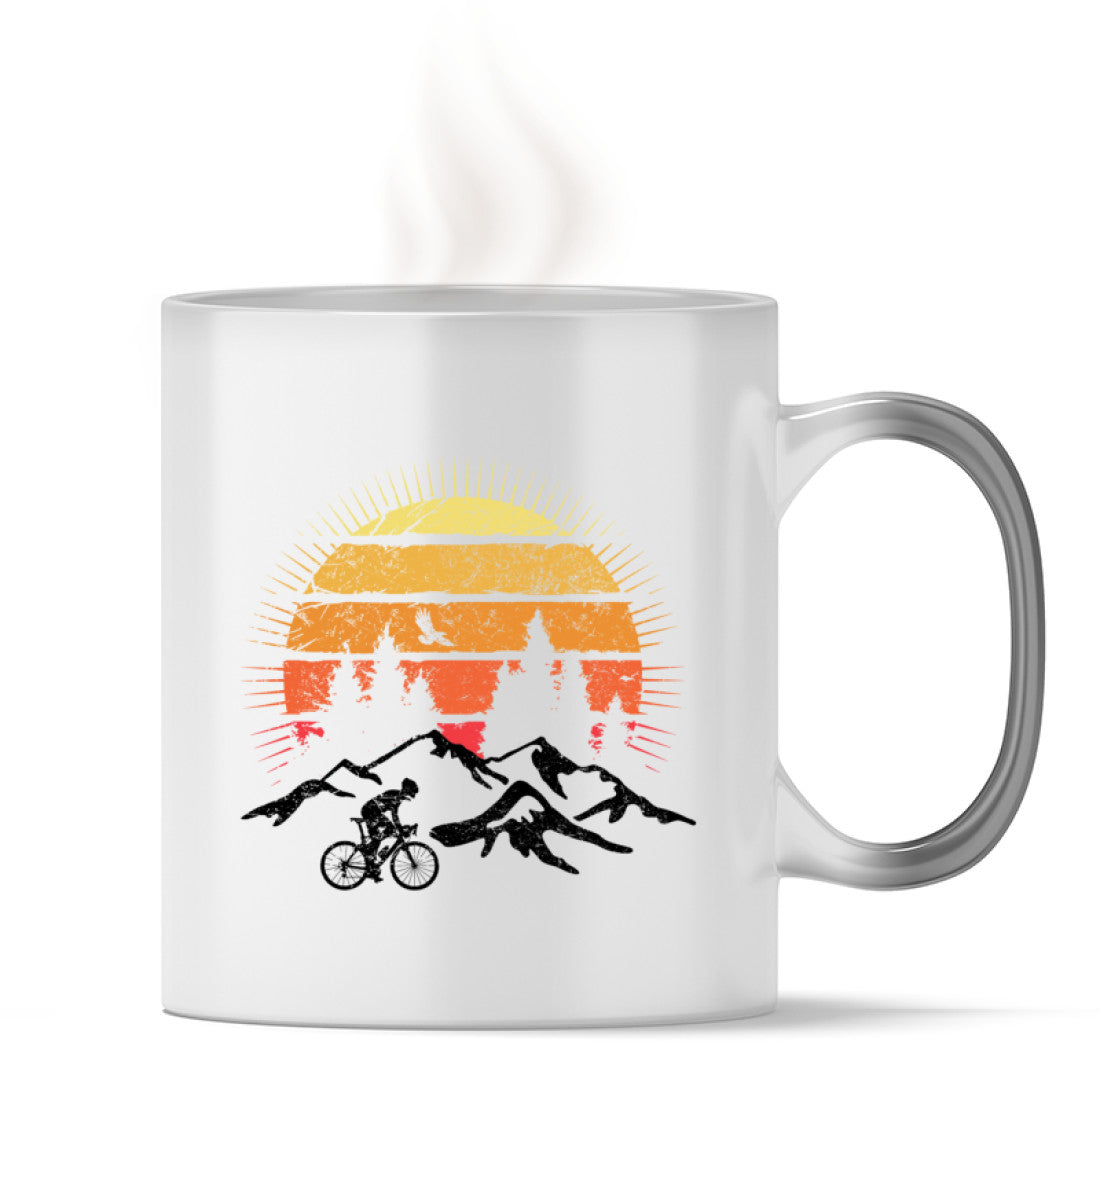 Radfahrer und Sonne Vintage - Zauber Tasse fahrrad mountainbike Default Title